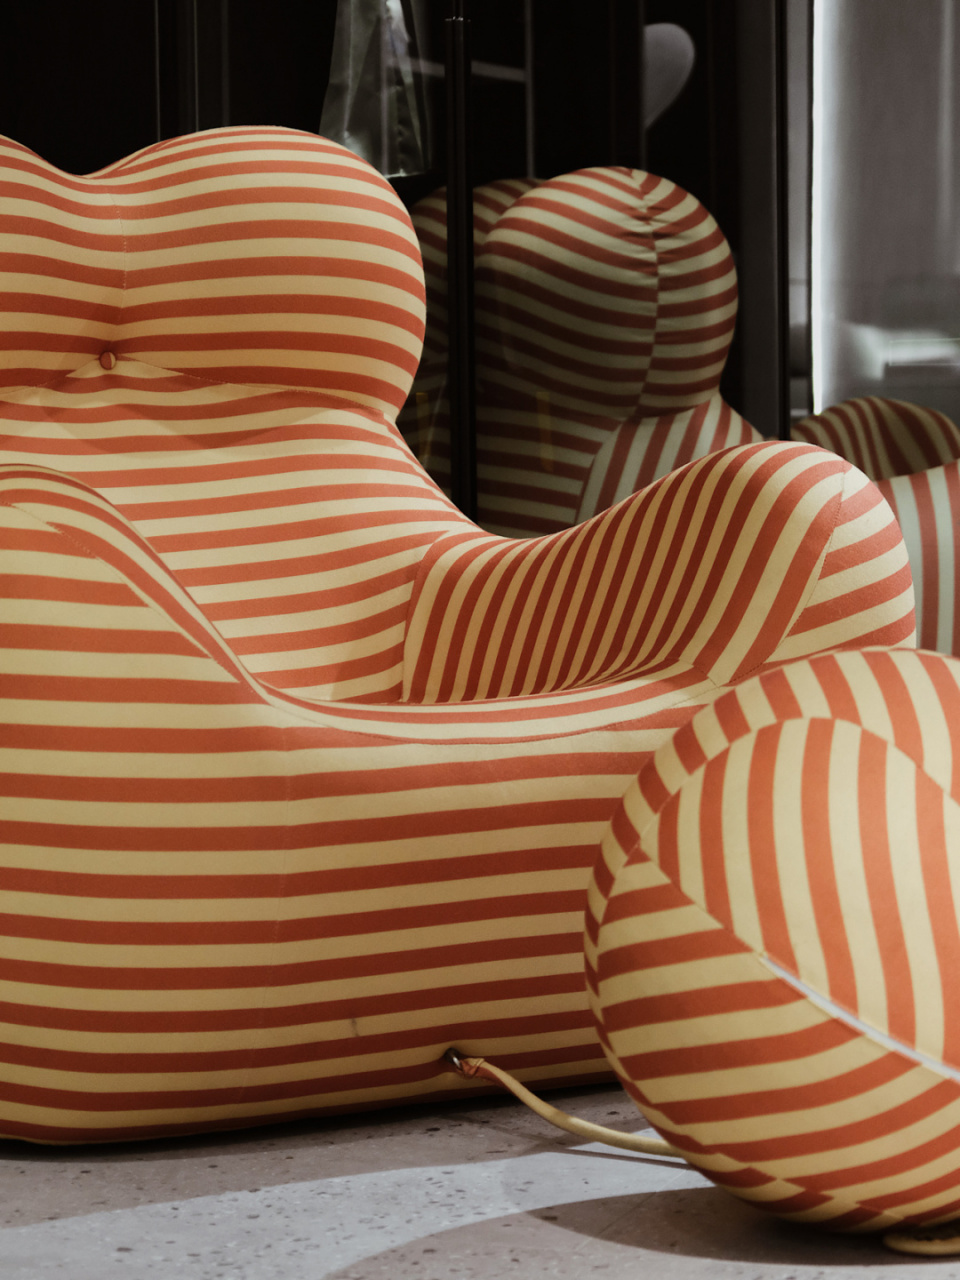 艾伦琼斯设计的椅子图片